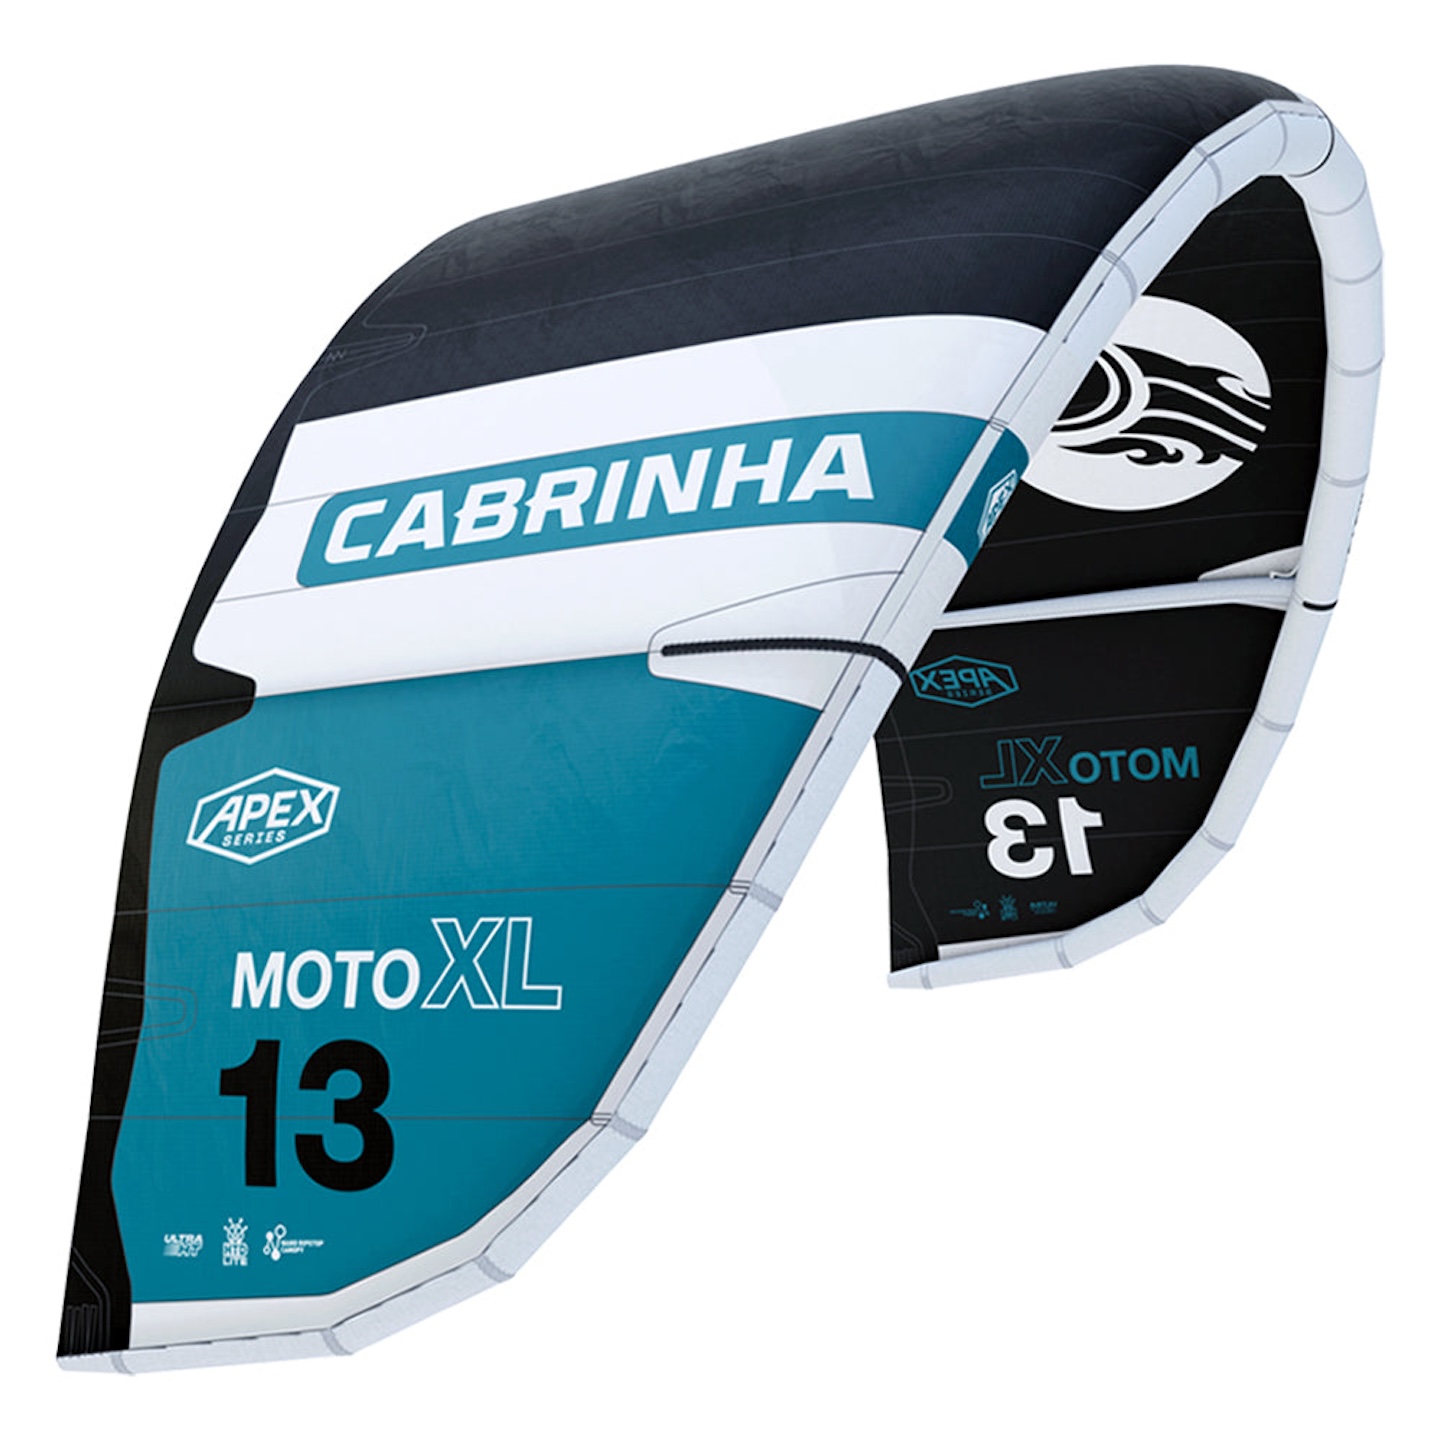 Cabrinha 04S Moto XL Apex Kite C4